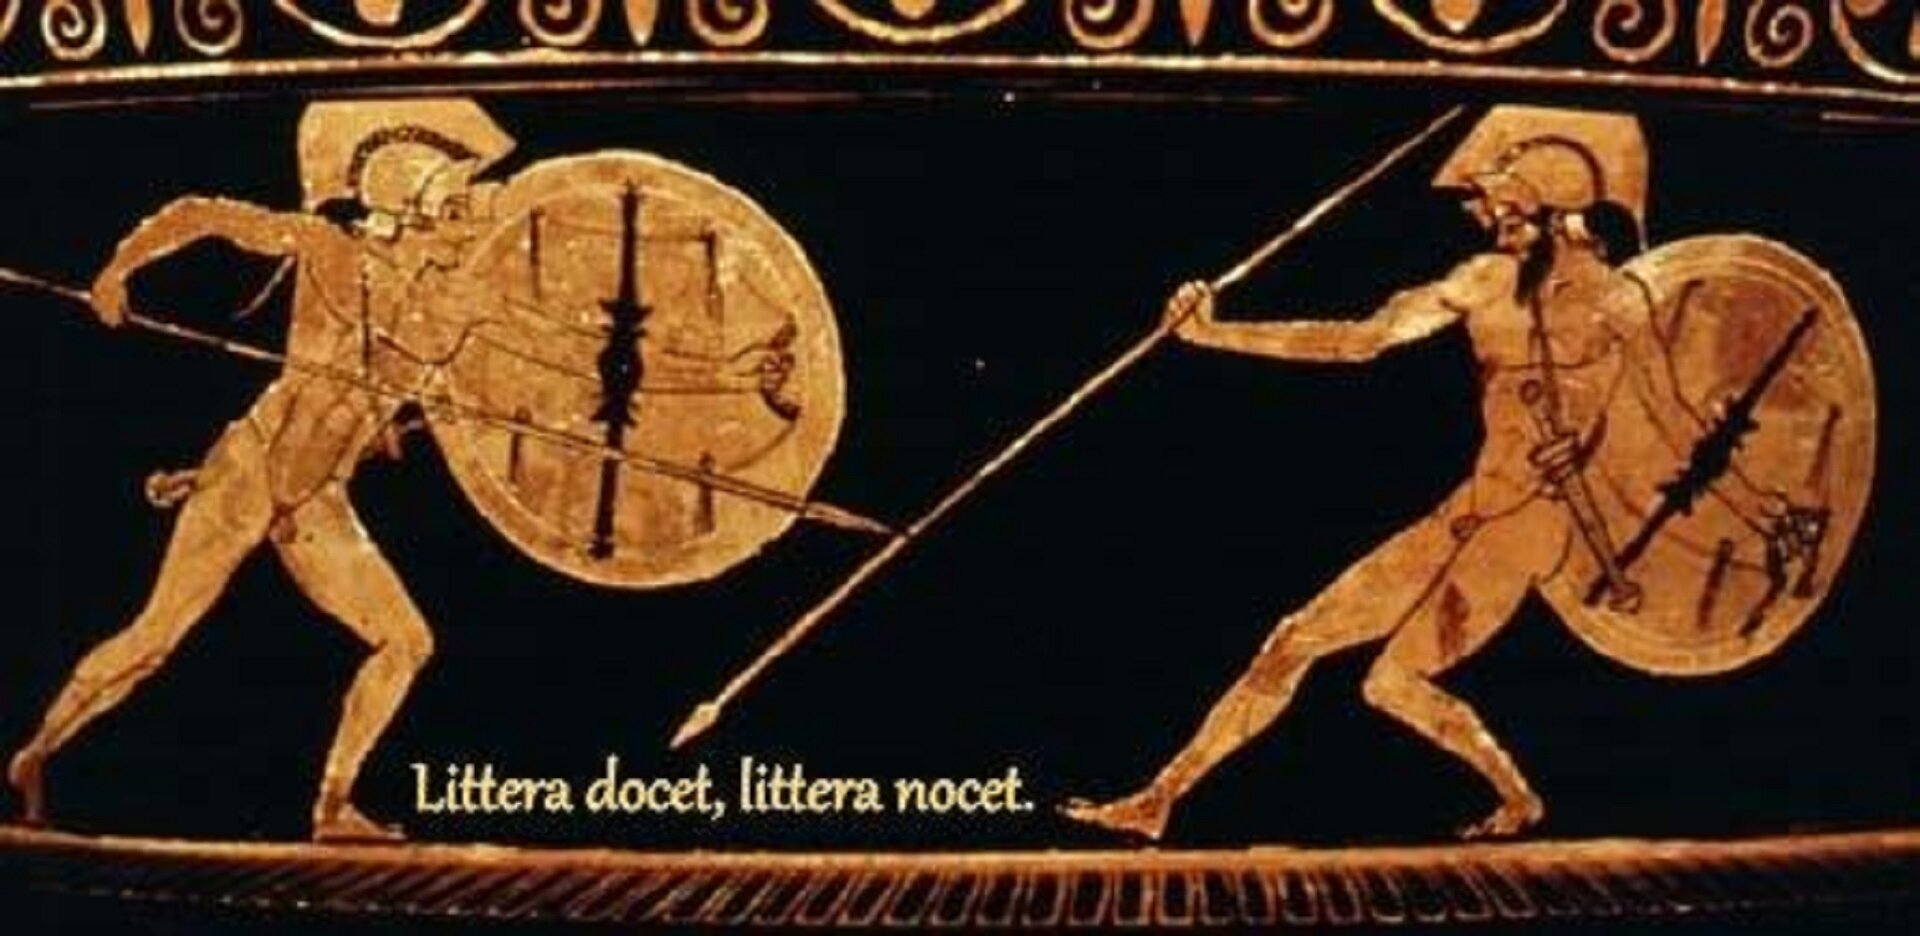 Fotografia nieznanego autora przedstawia malarstwo czerownofigurowe na bliżej nieokreślonym naczyniu, na którym znajdują się dwie walczące postacie – Achilles i Hektor. Achilles znajduje się po lewej stronie, jest nagi, w jednej dłoni trzyma tarczę, a w drugiej włócznię. Jego przeciwnik również jest nagi, w jednej dłoni trzyma tarczę, w drugiej włócznię. Na pasie ma przewieszony miecz. Pod sceną walki widnieje napis: Littera docet, littera nocet.